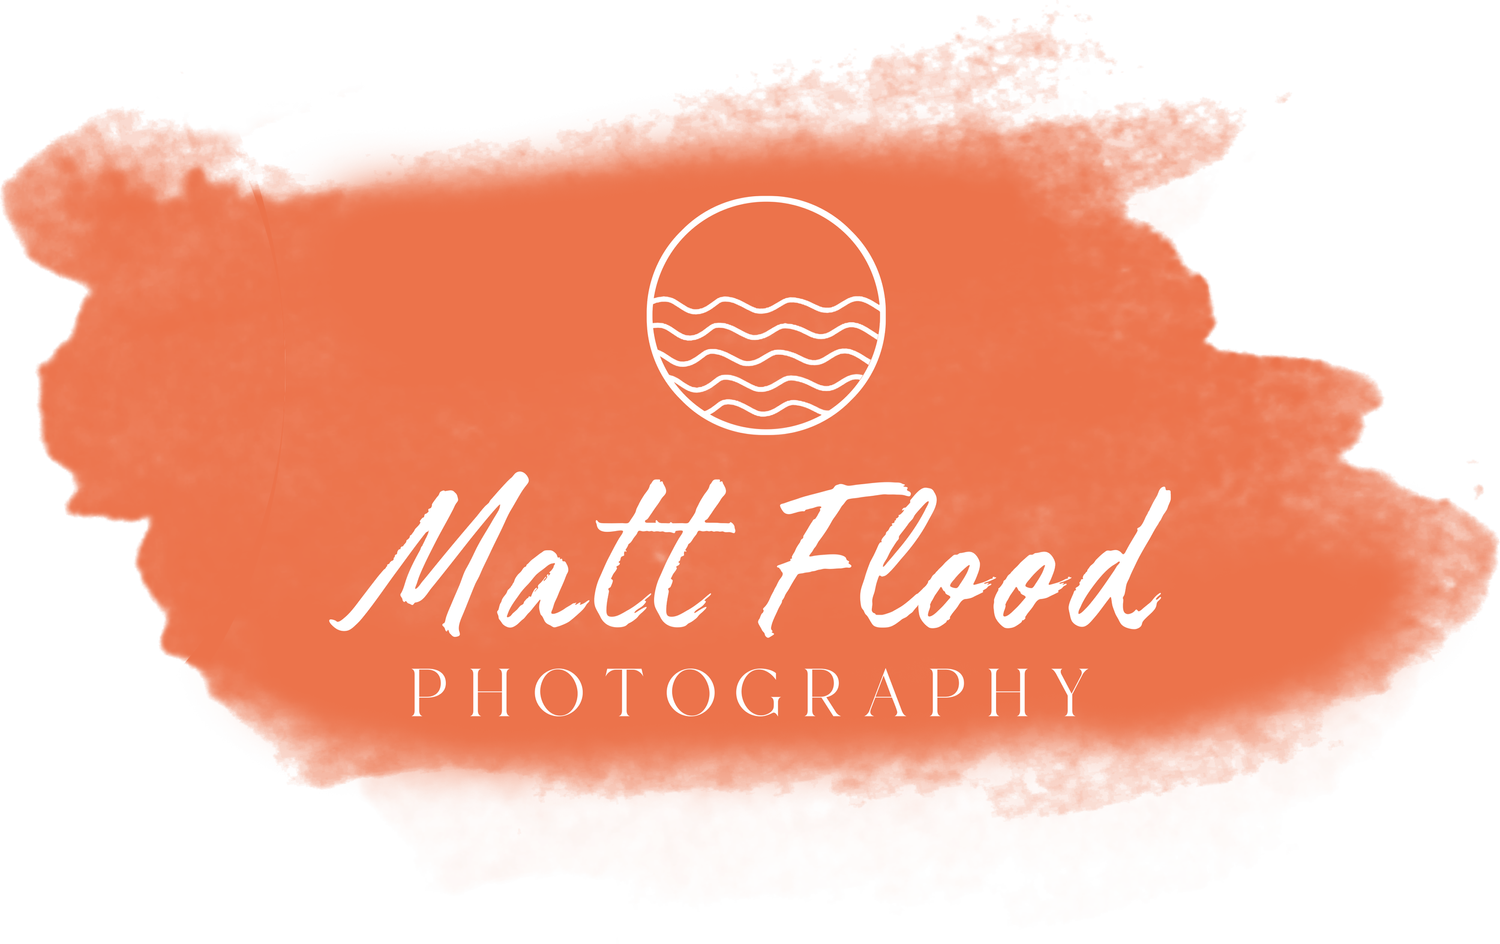 Matt Flood Photography